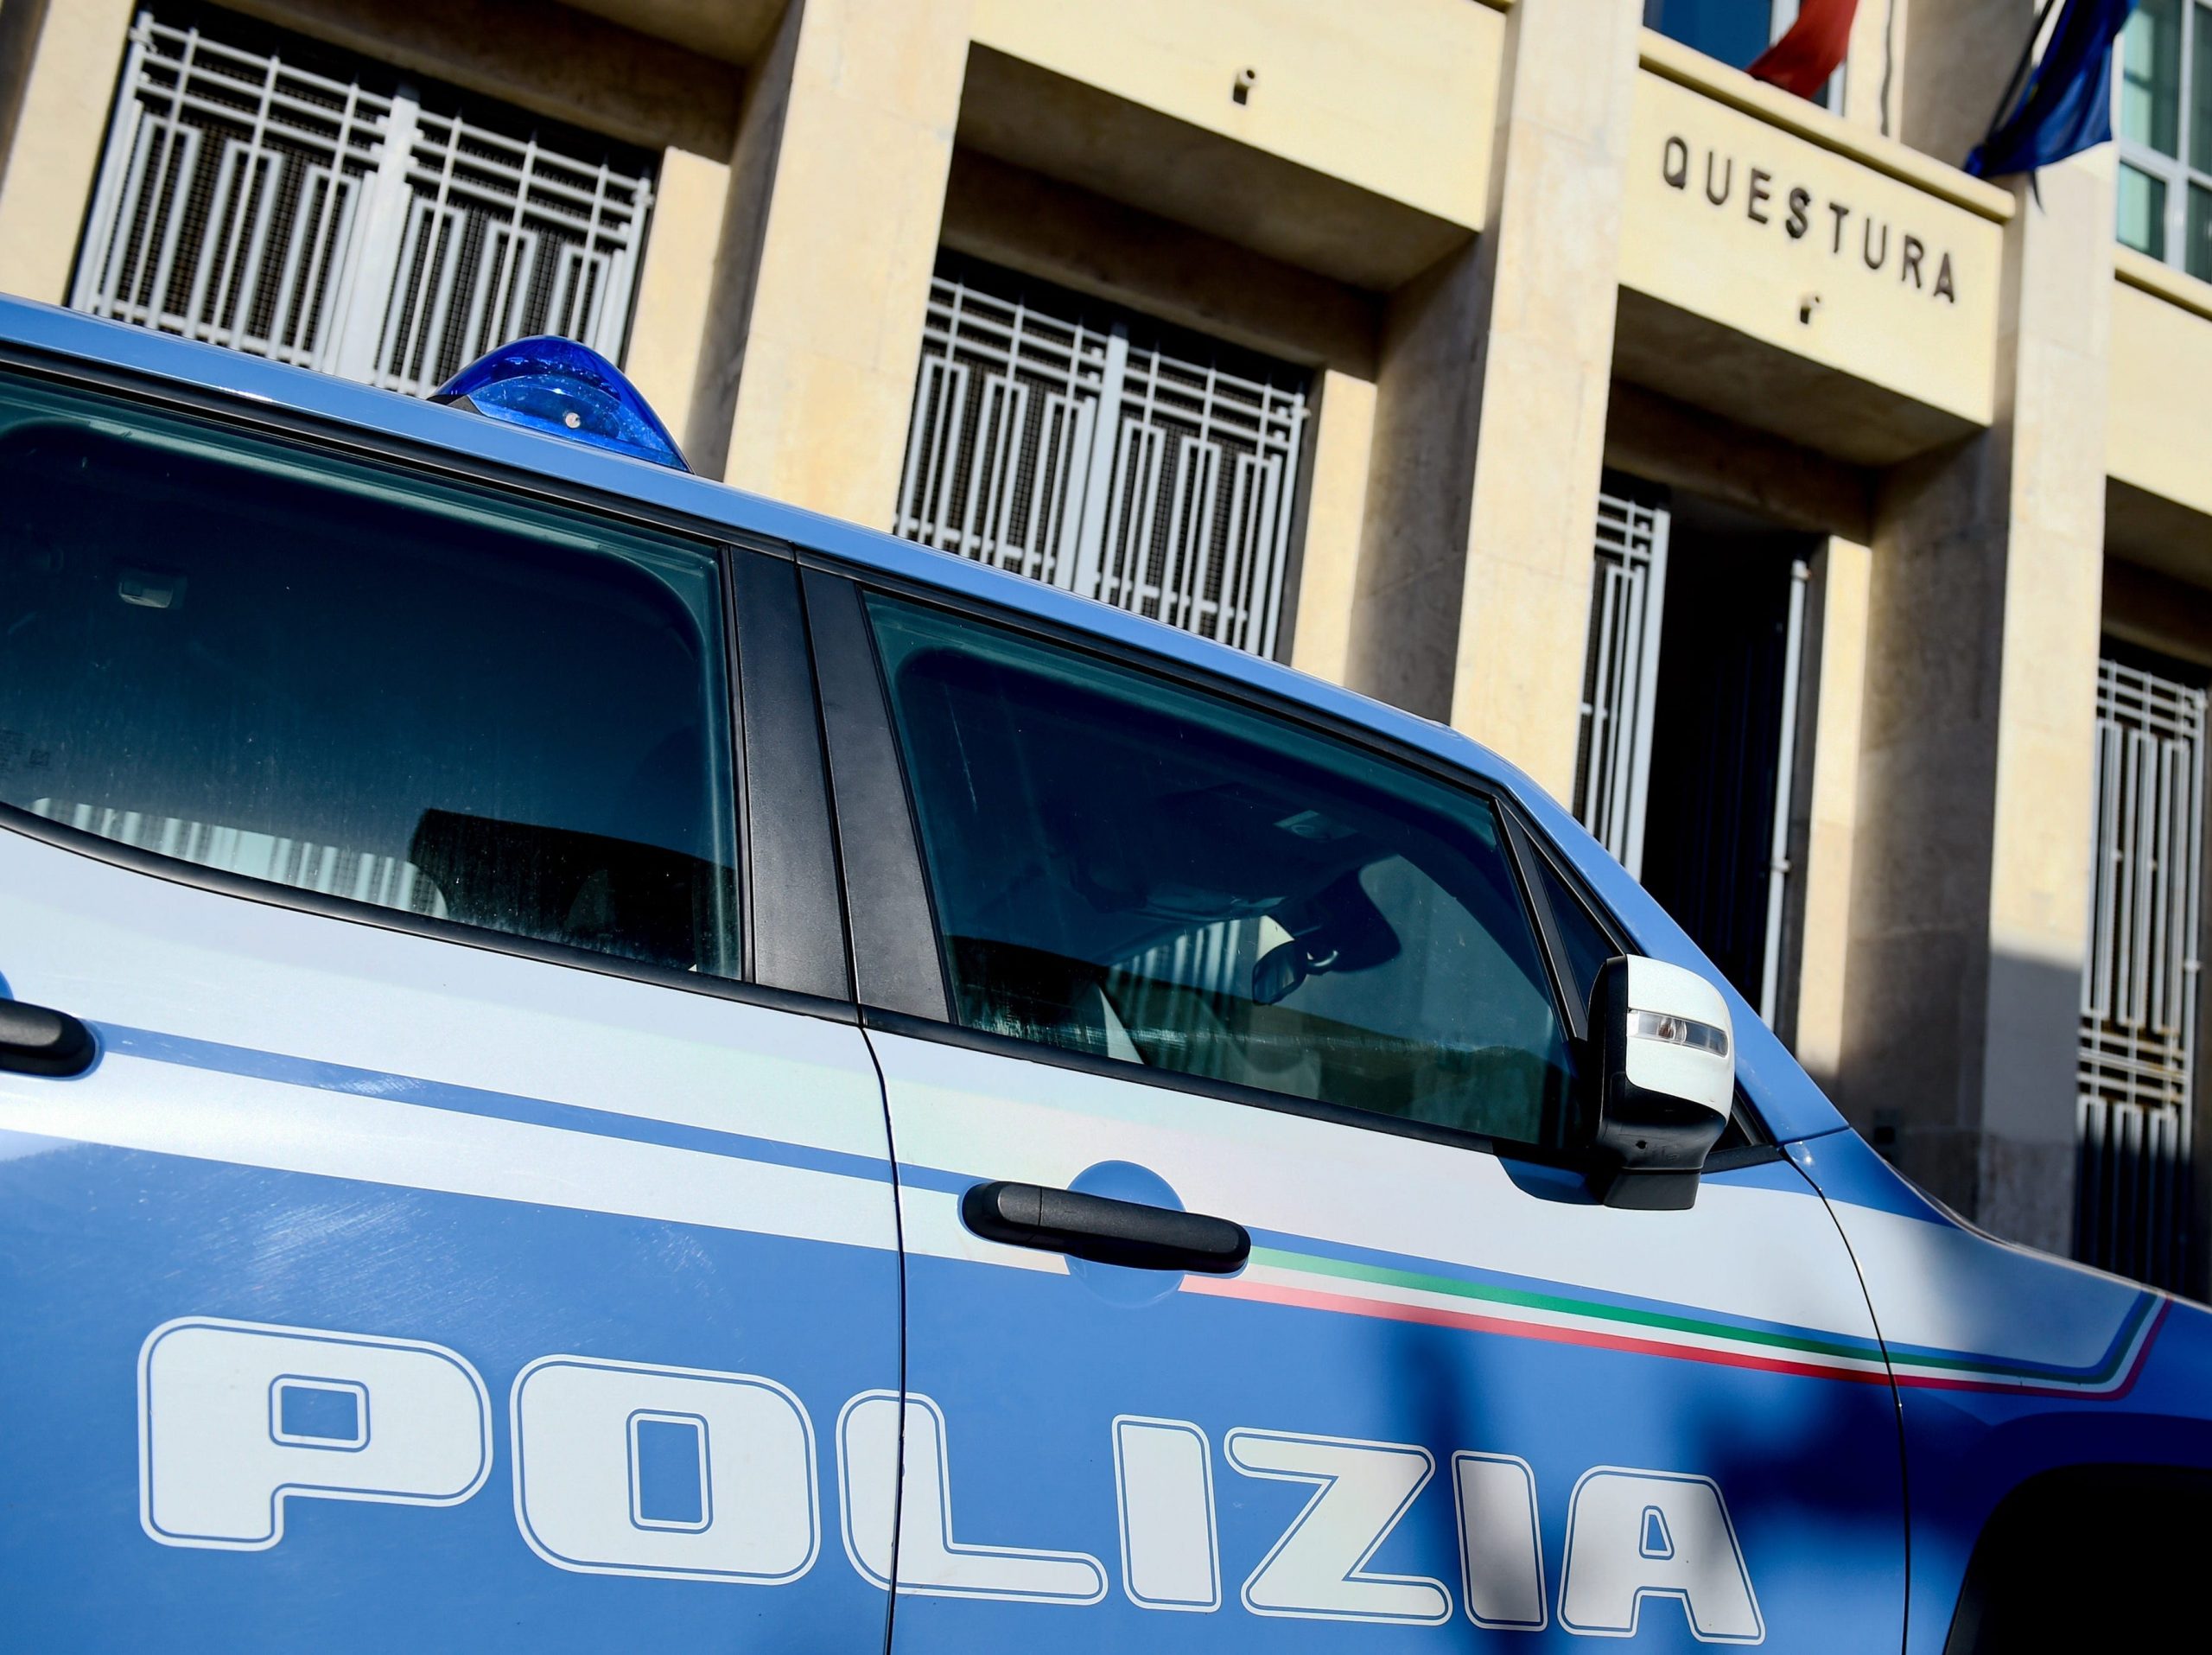 Questura, italian police headquarters.